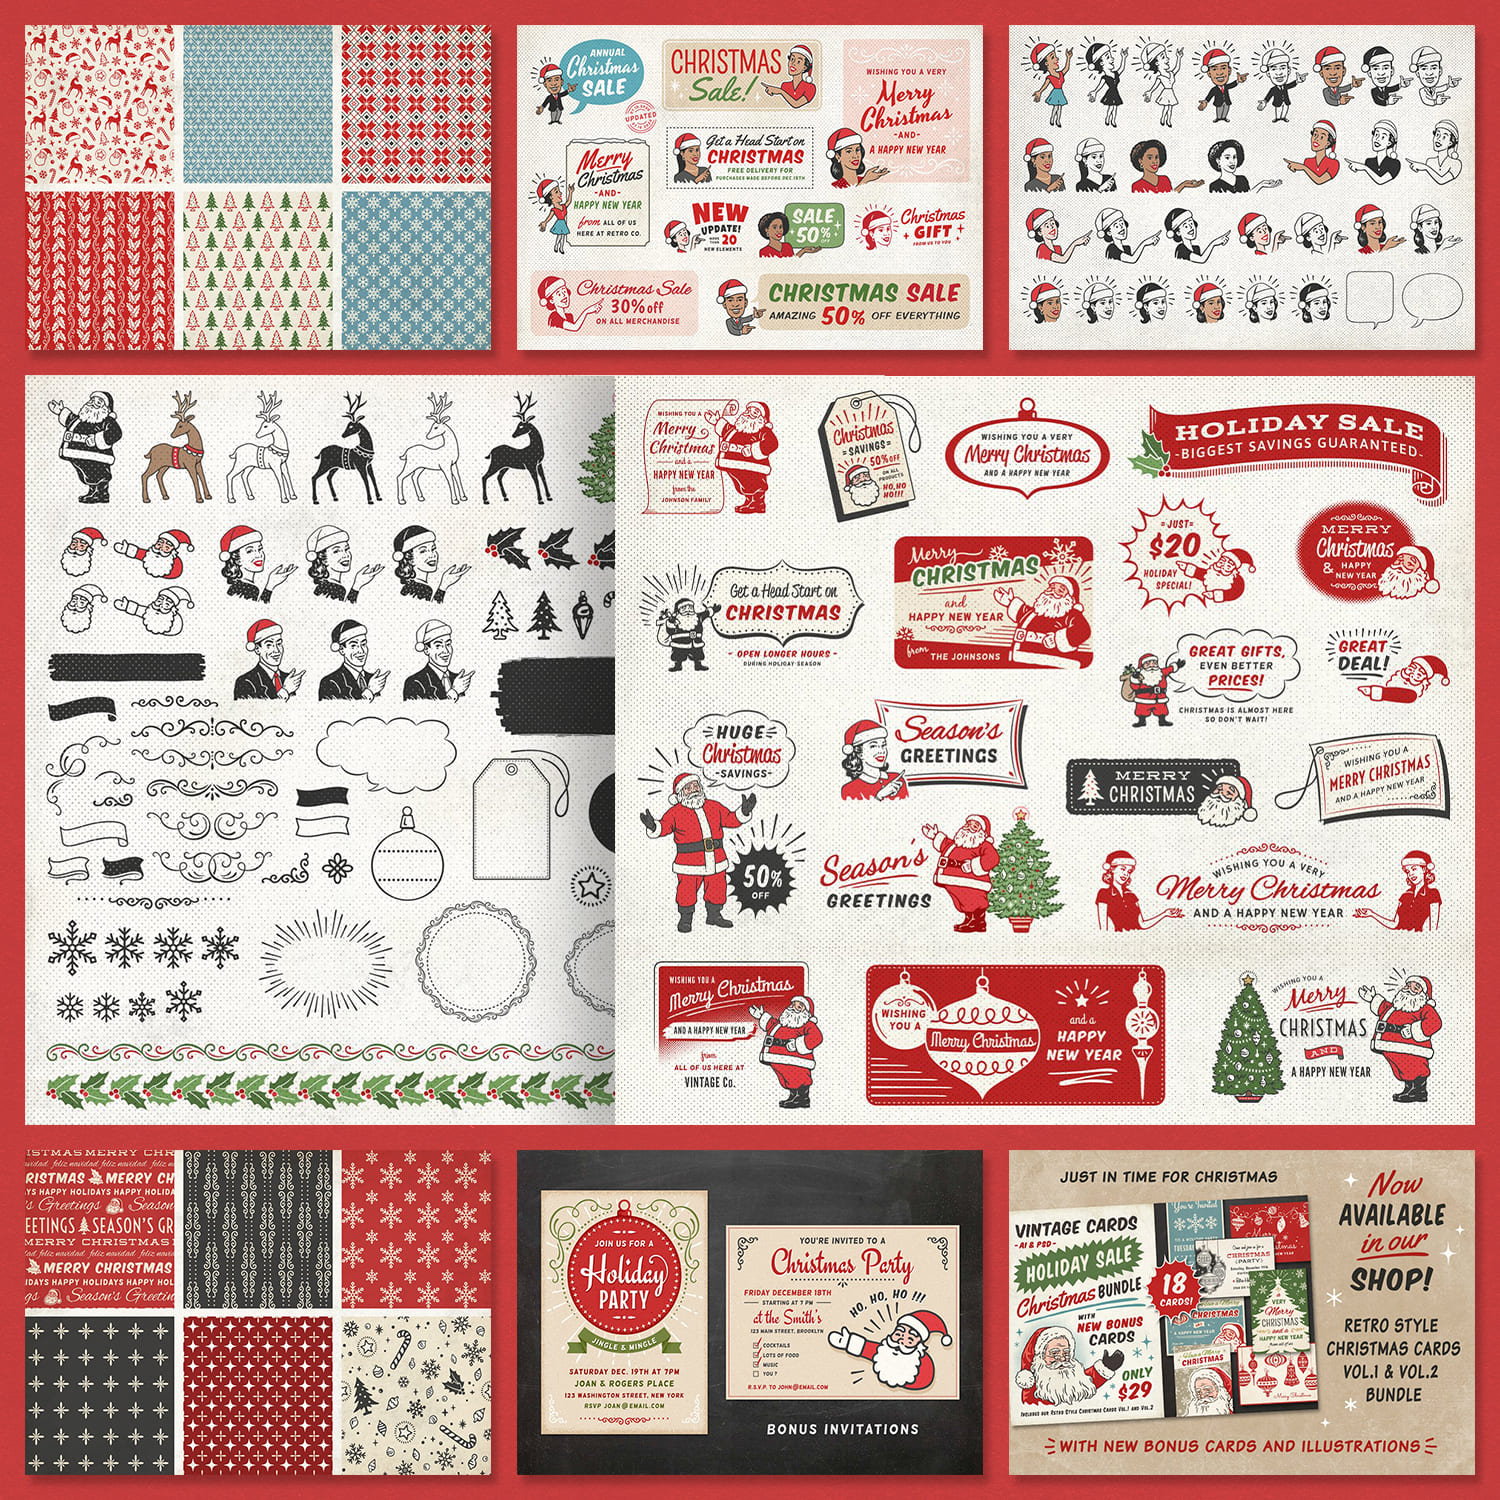 Retro Christmas Labels Bundle cover image.